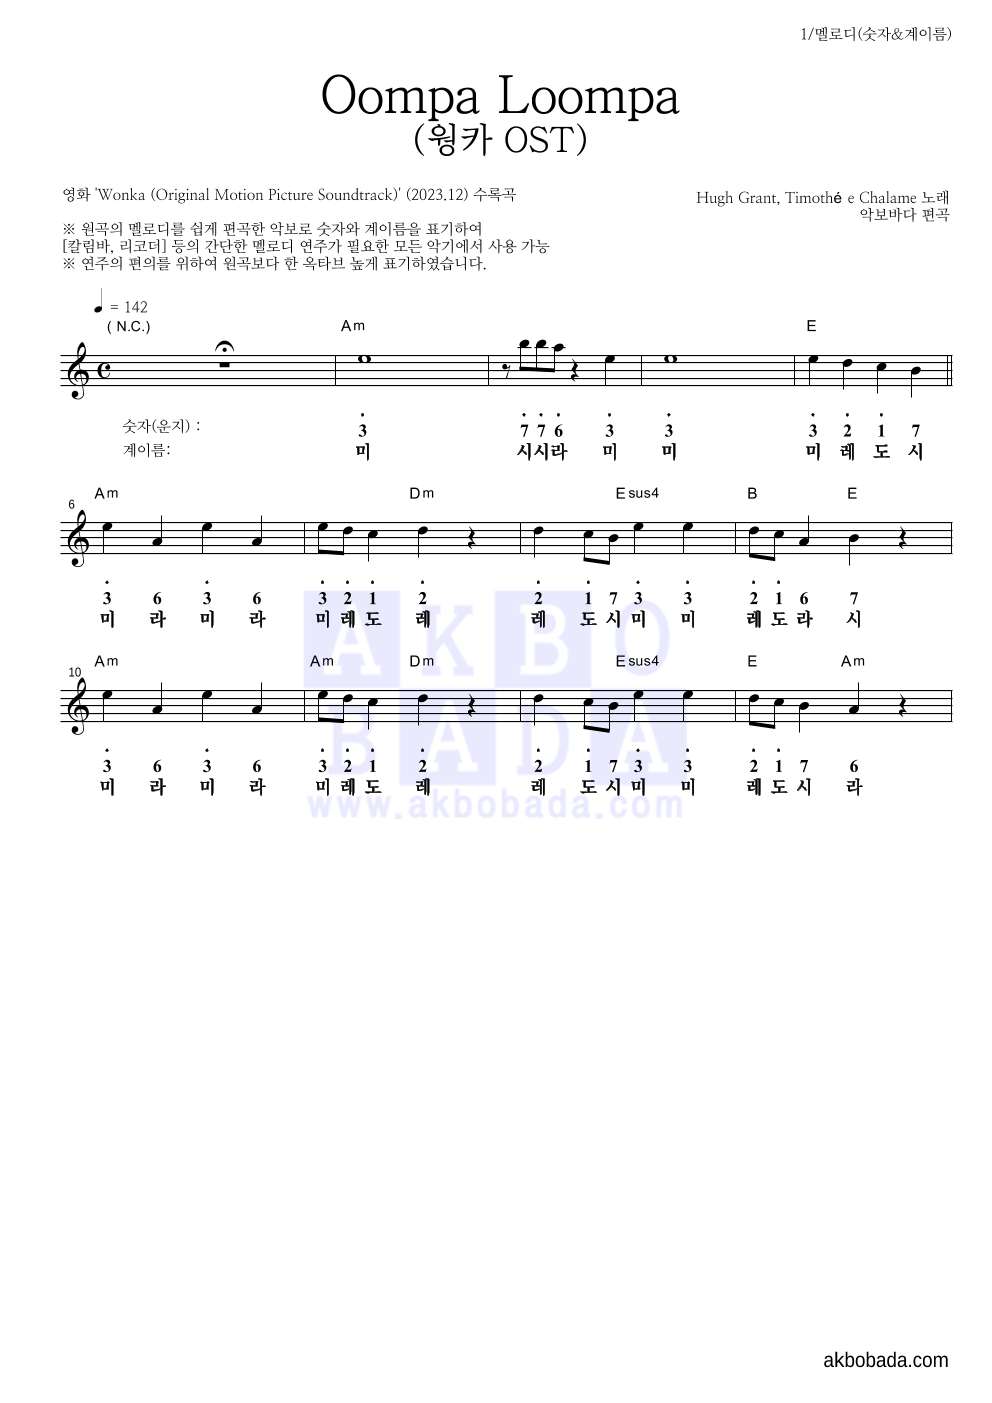 웡카 OST - Oompa Loompa 멜로디-숫자&계이름 악보 